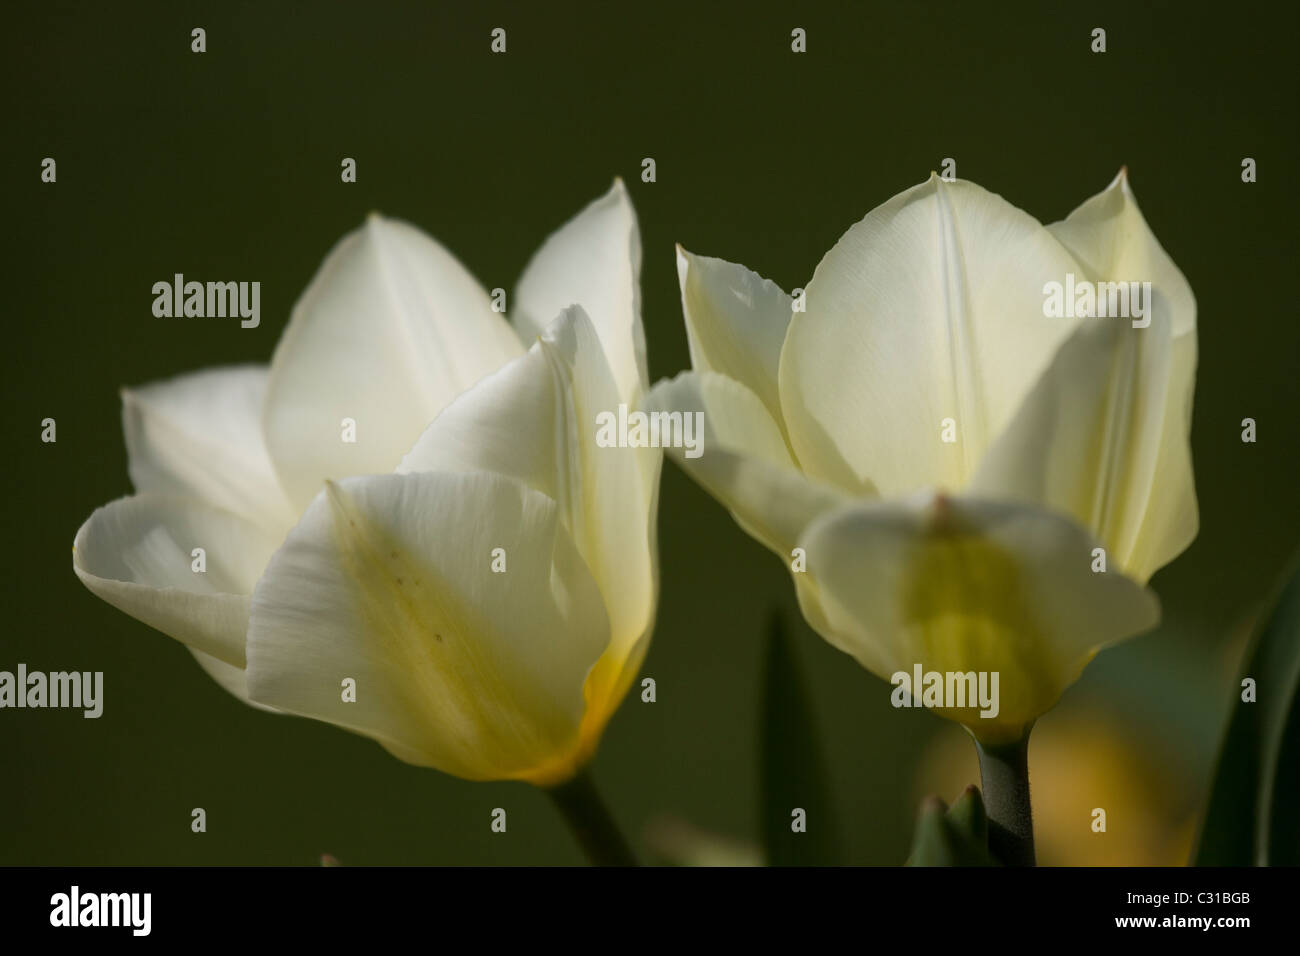 Tulipes blanches dans Streatham Park, Londres du sud. Banque D'Images